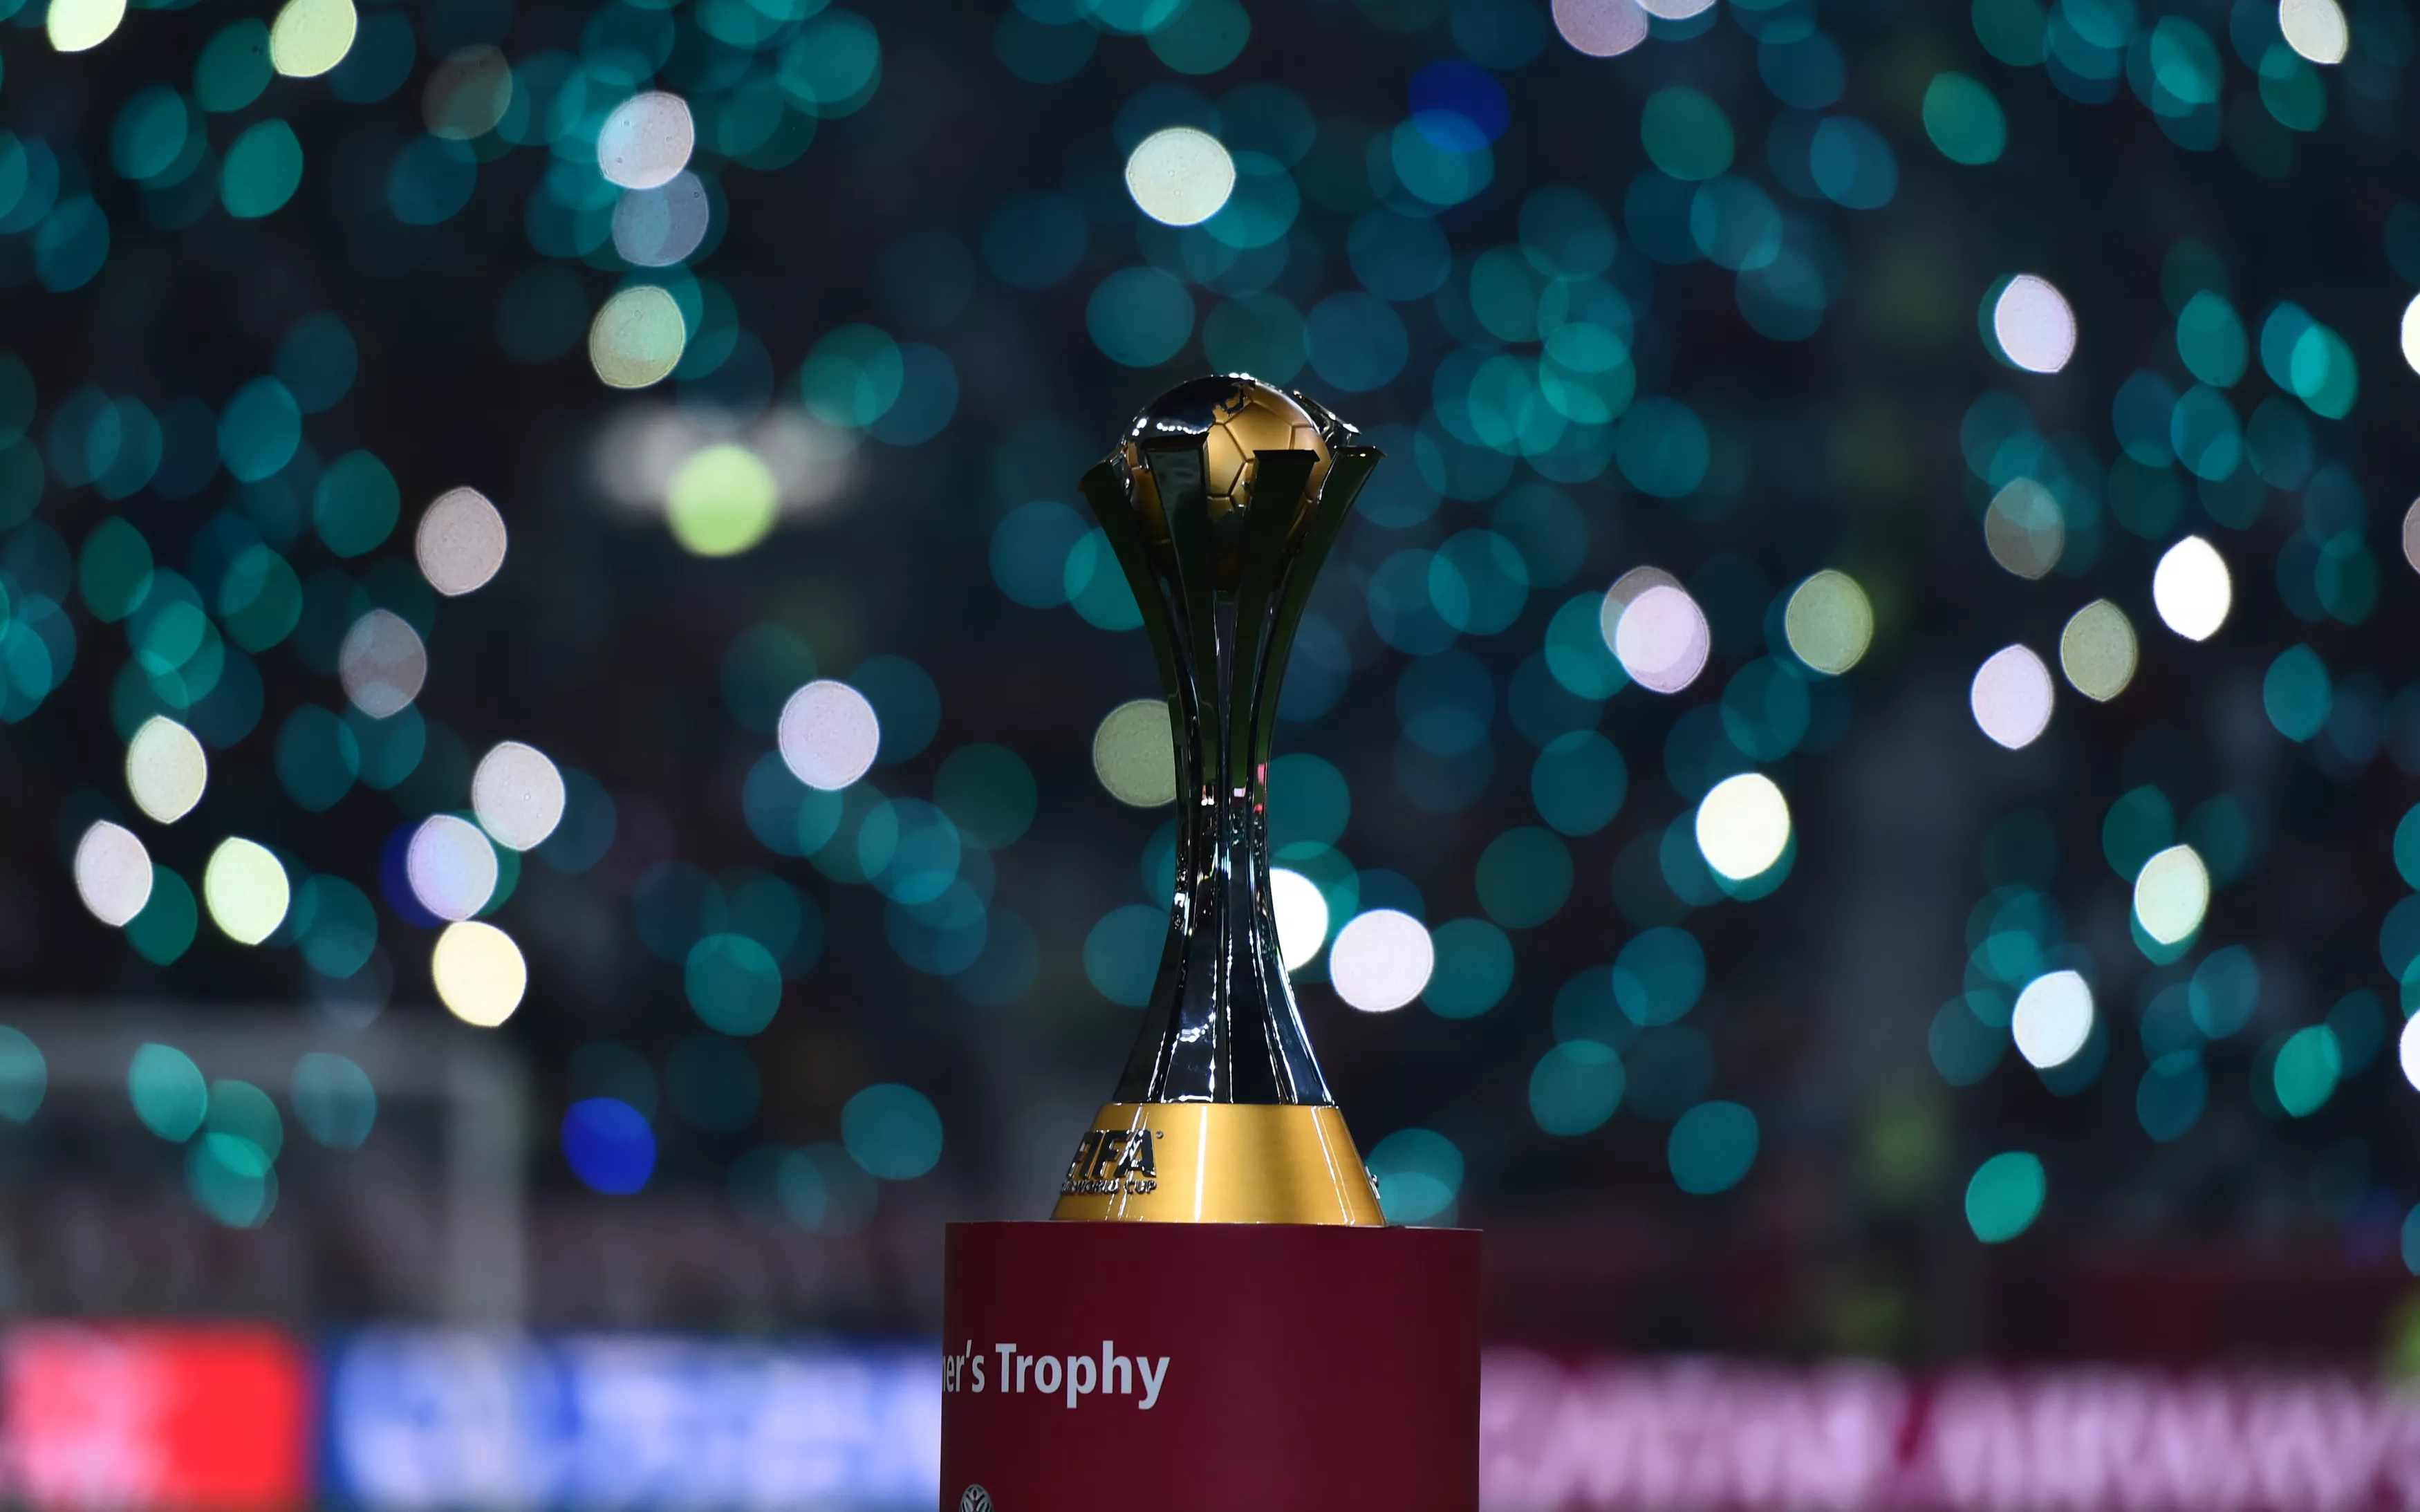 Fifa divulga sede do Mundial de Clubes 2023; campeonato será